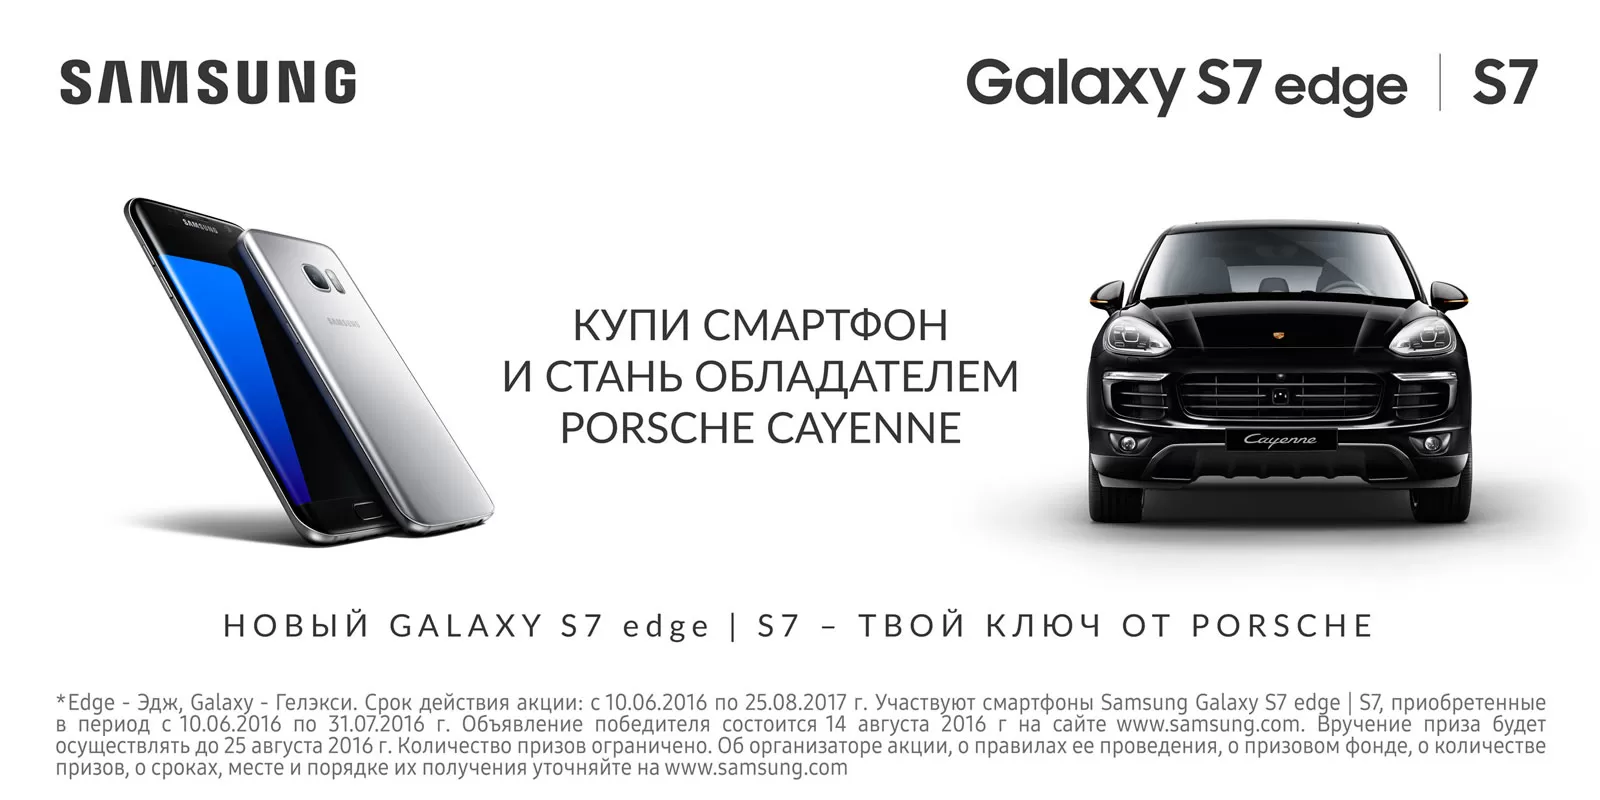 Флагманский смартфон Samsung Galaxy S7 edge|S7 может стать ключом от нового внедорожника Porsche Cayenne.